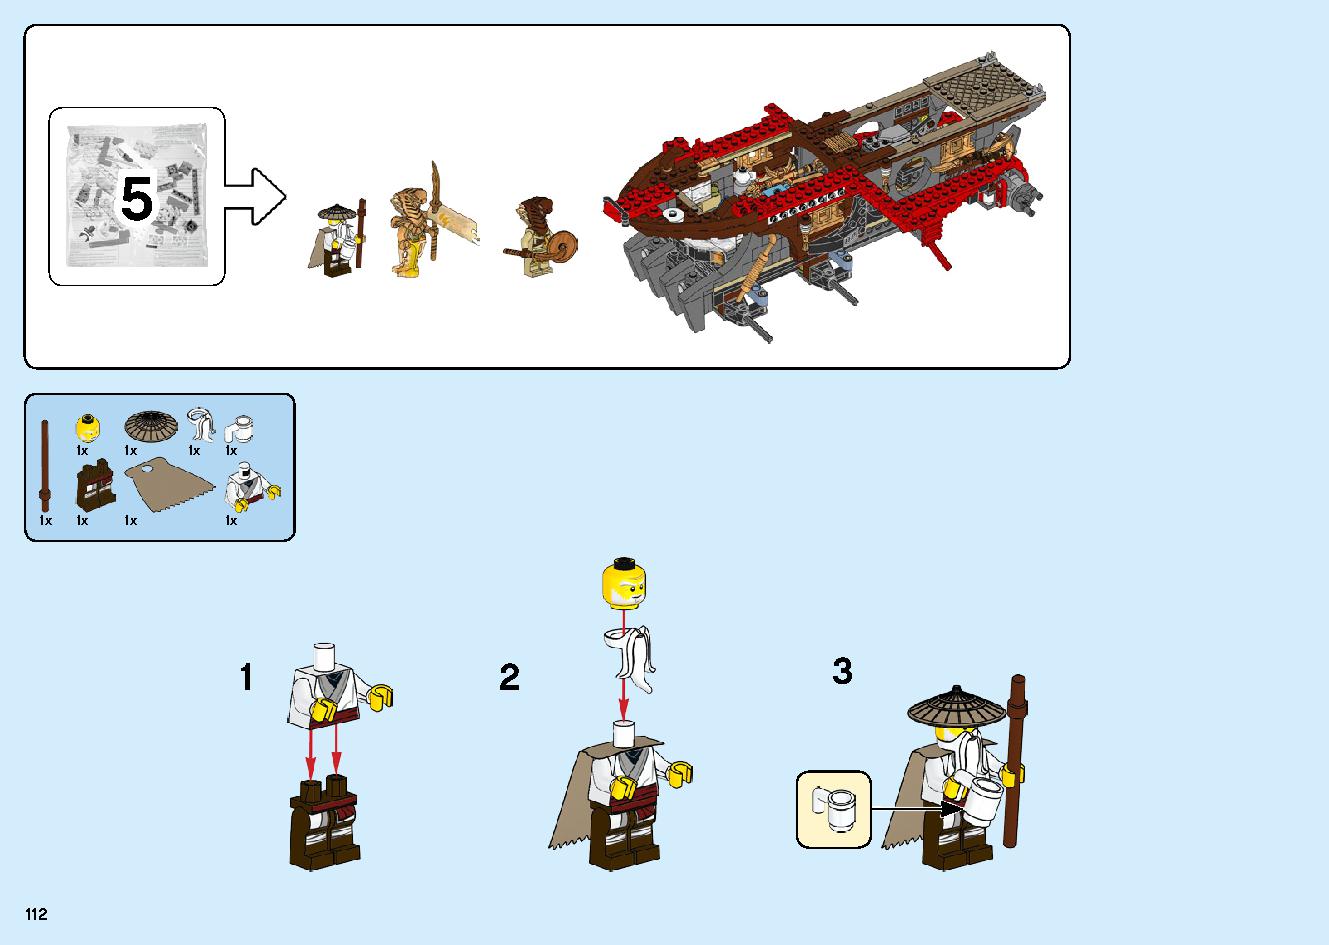 陸上戦艦バウンティ号 70677 レゴの商品情報 レゴの説明書・組立方法 112 page